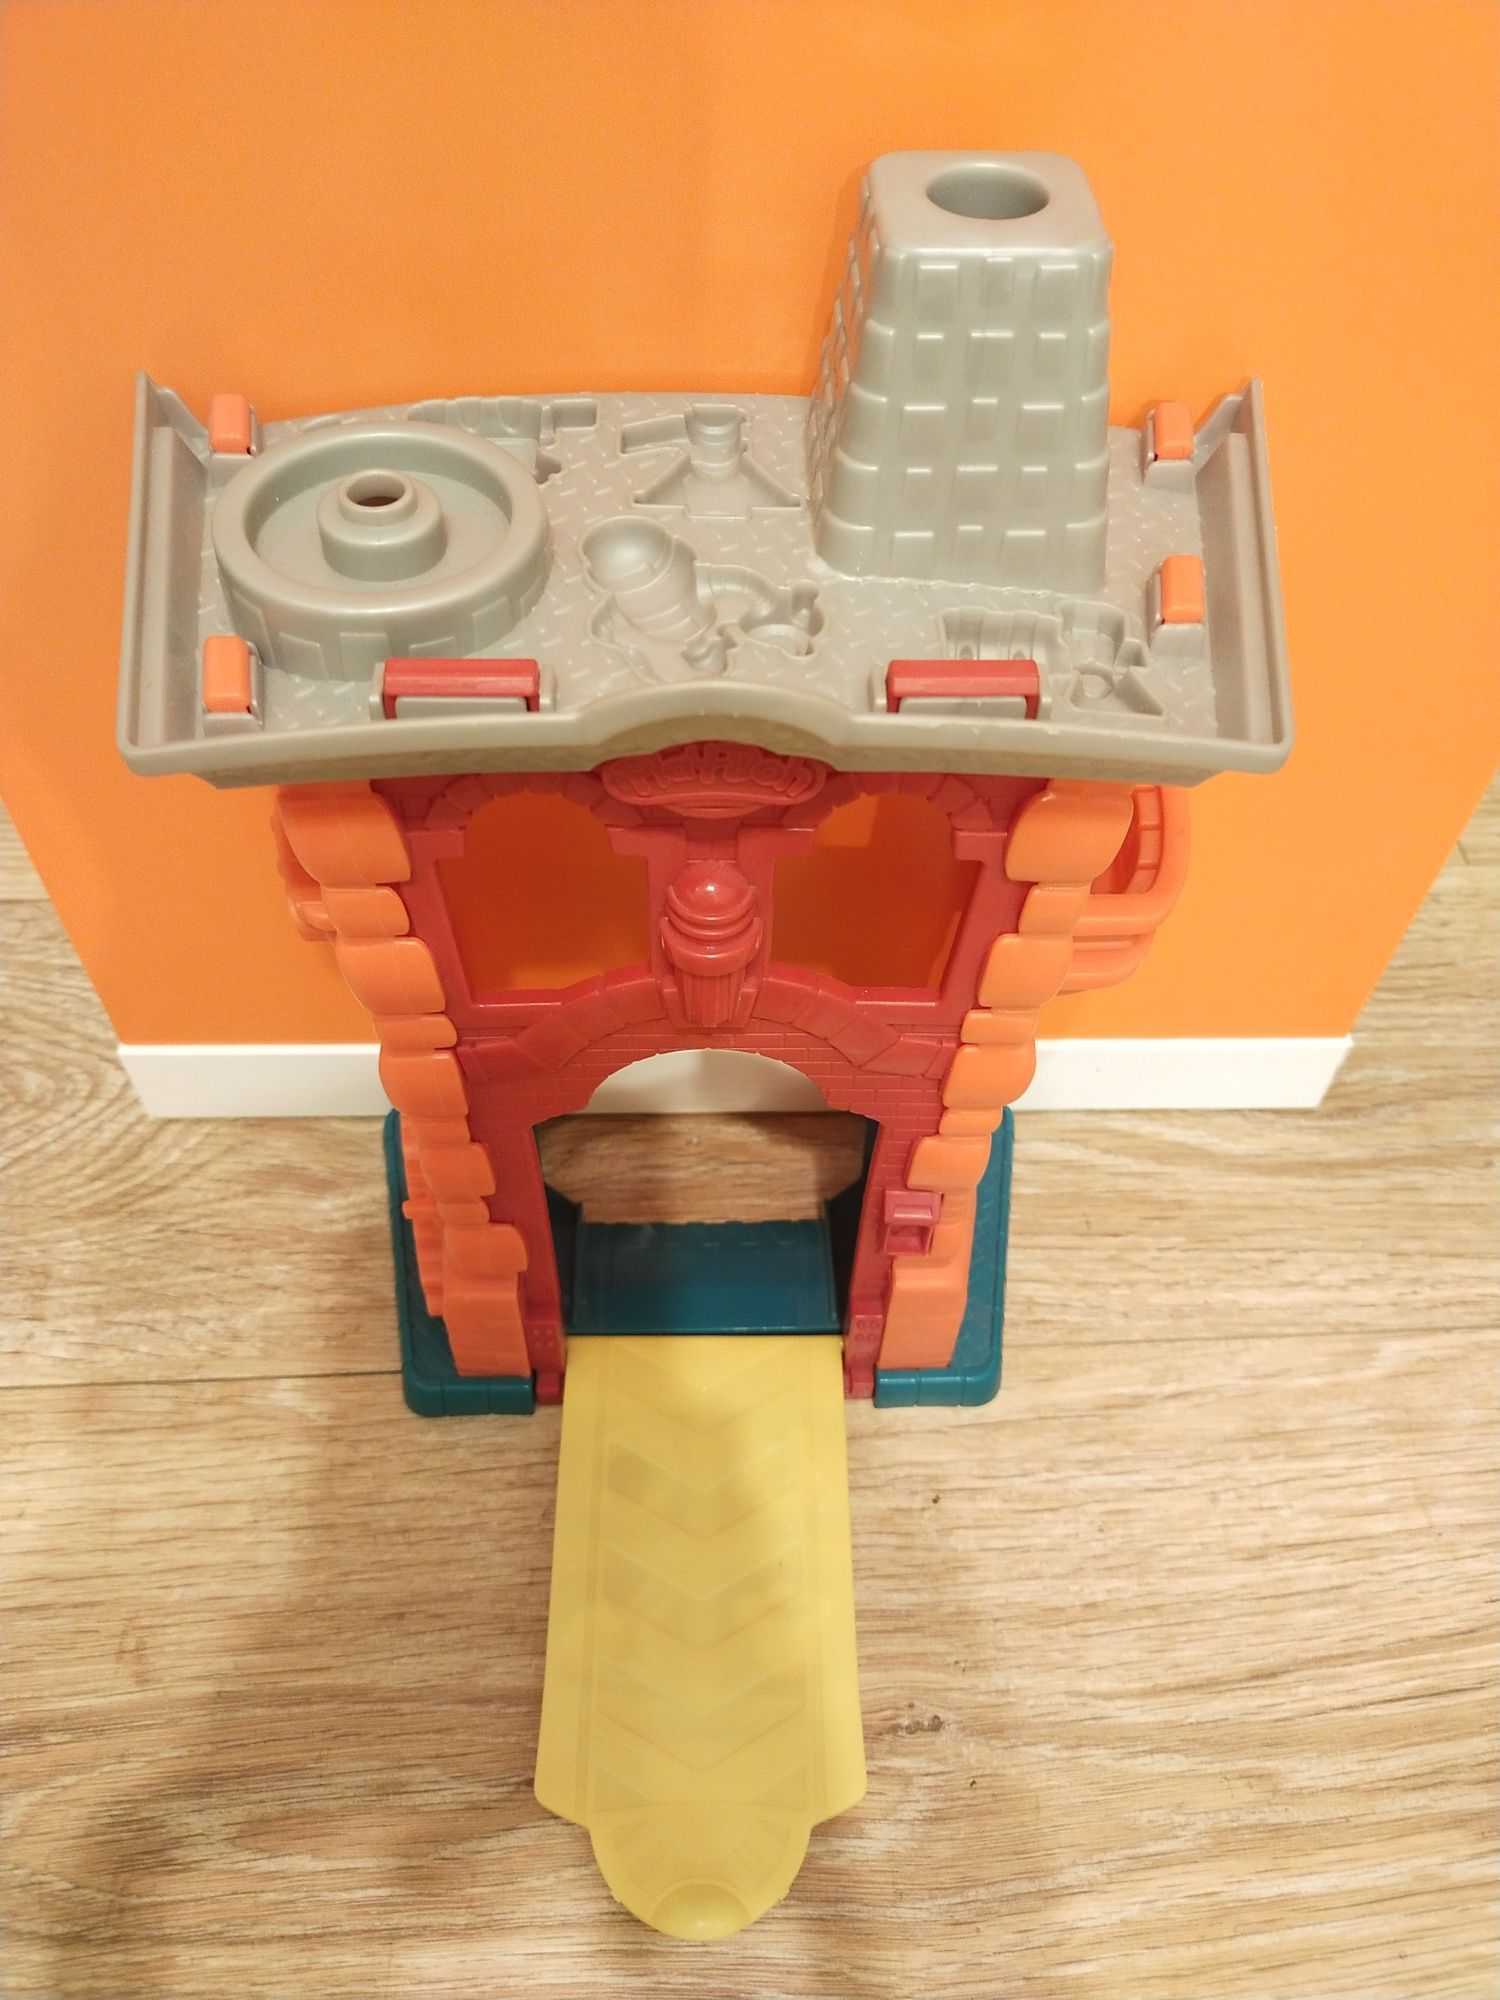 Zabawka modelina Play doh remiza strażacka